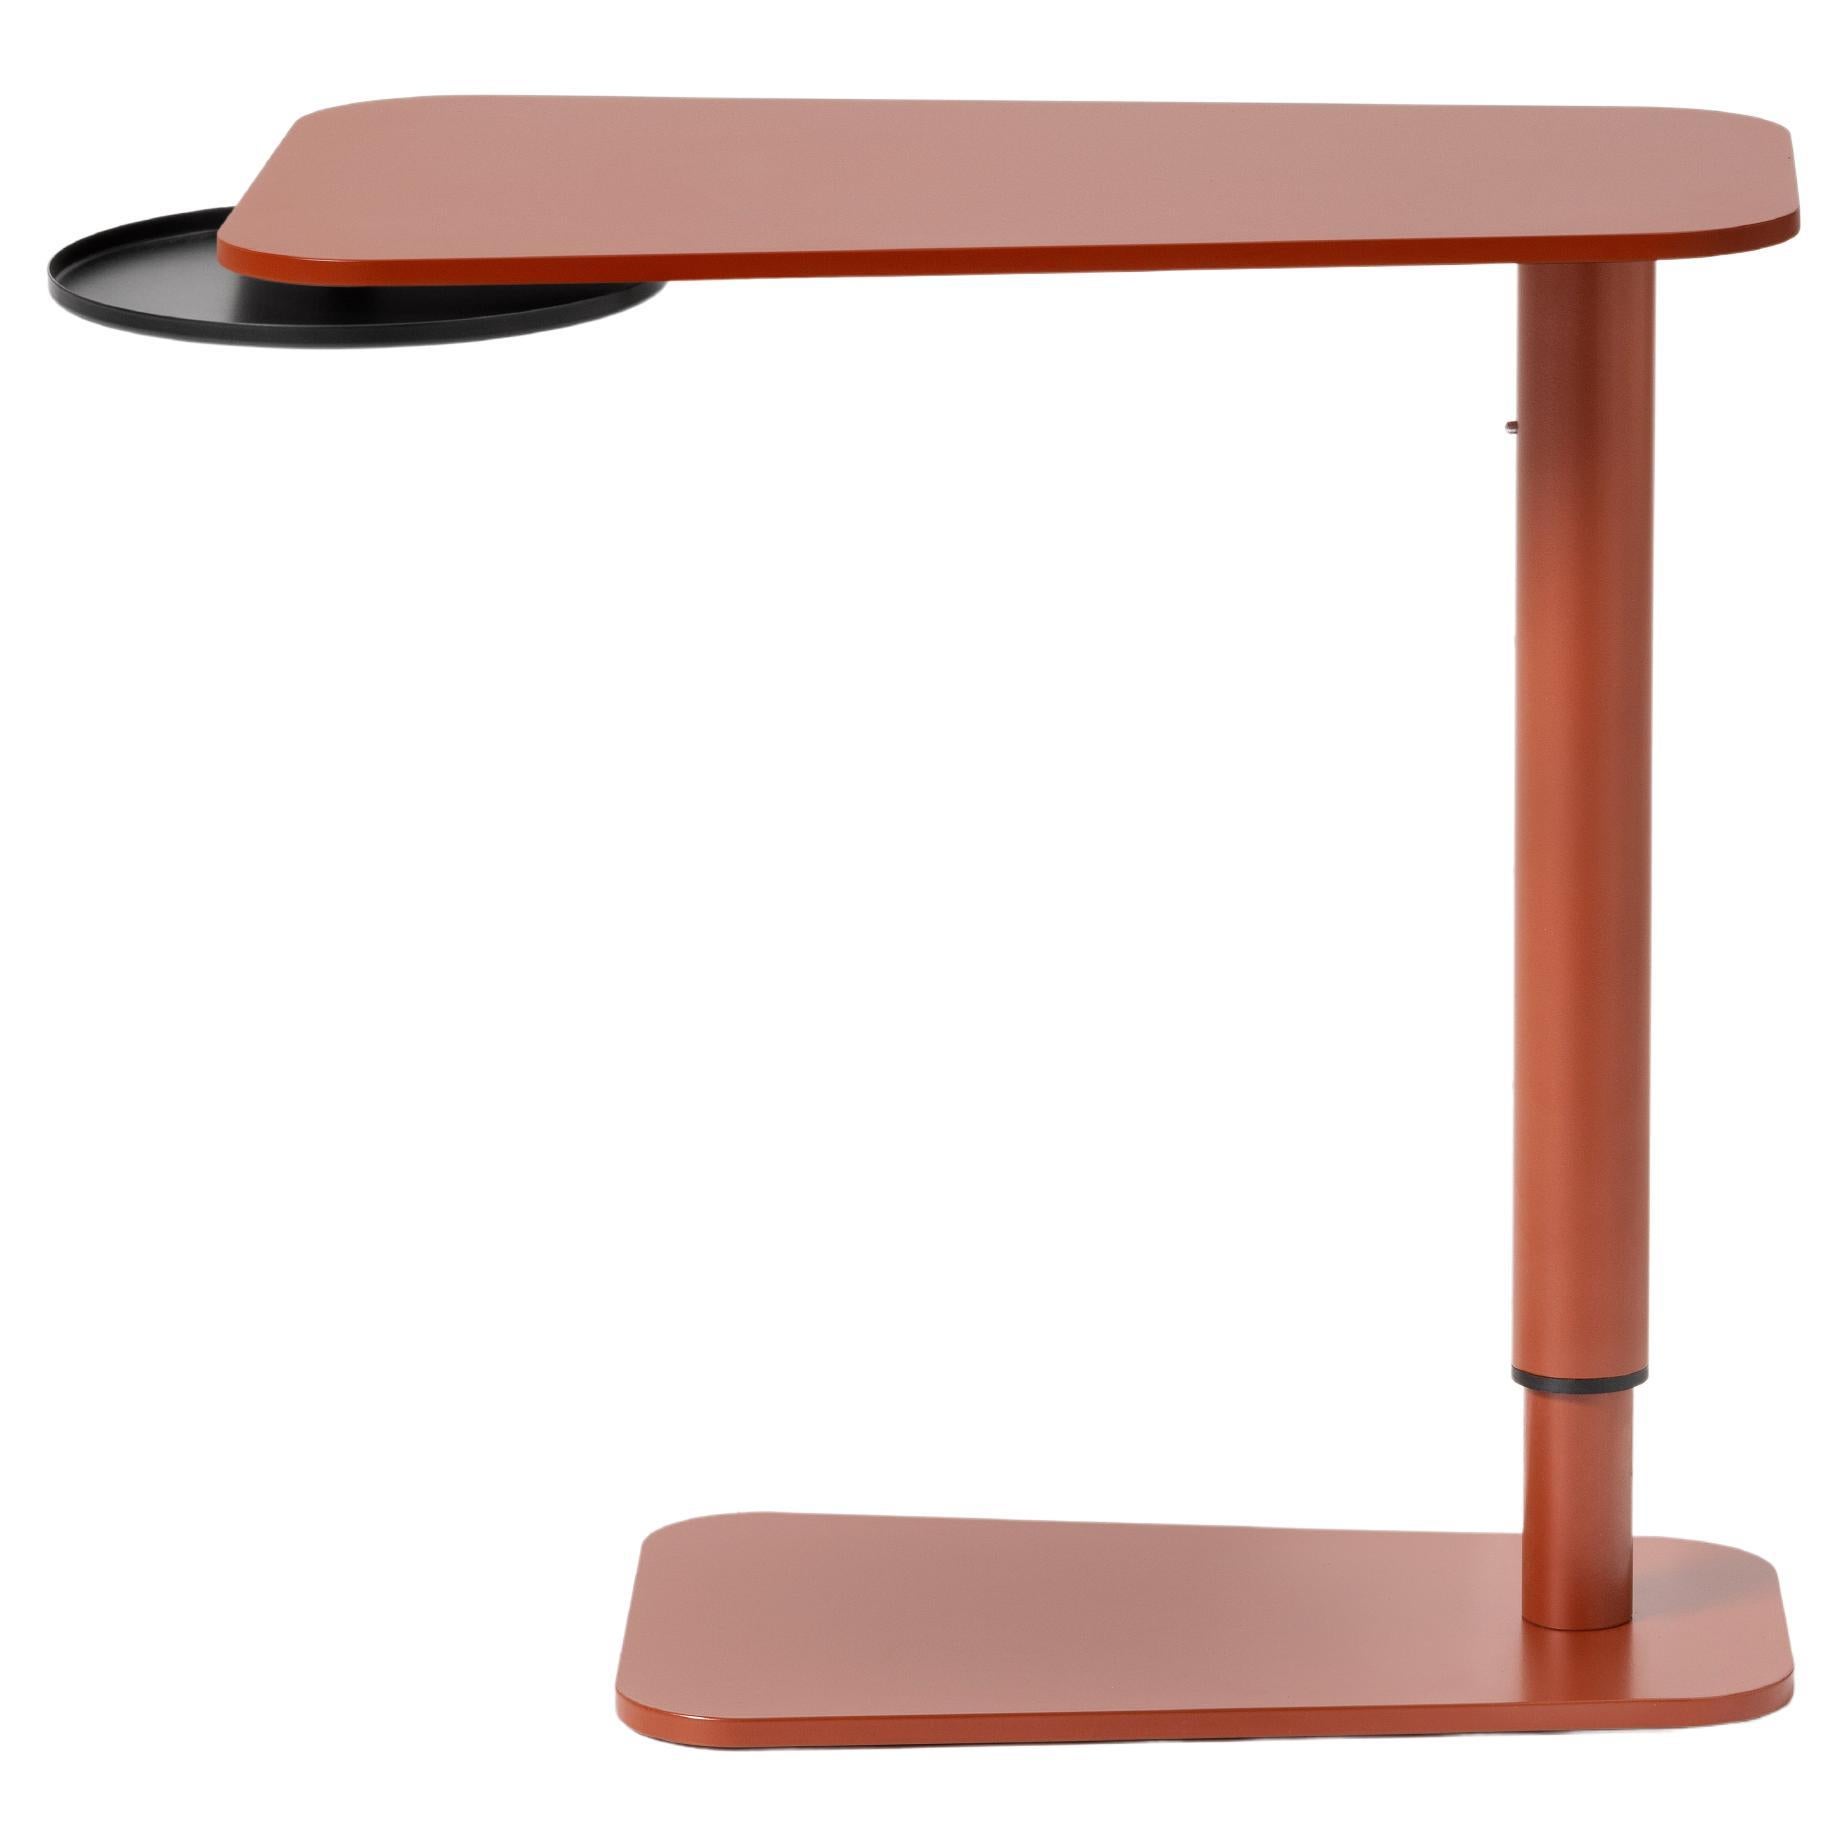 Table d'appoint Jens, petite table, couleur, métal, design, réglable, table basse